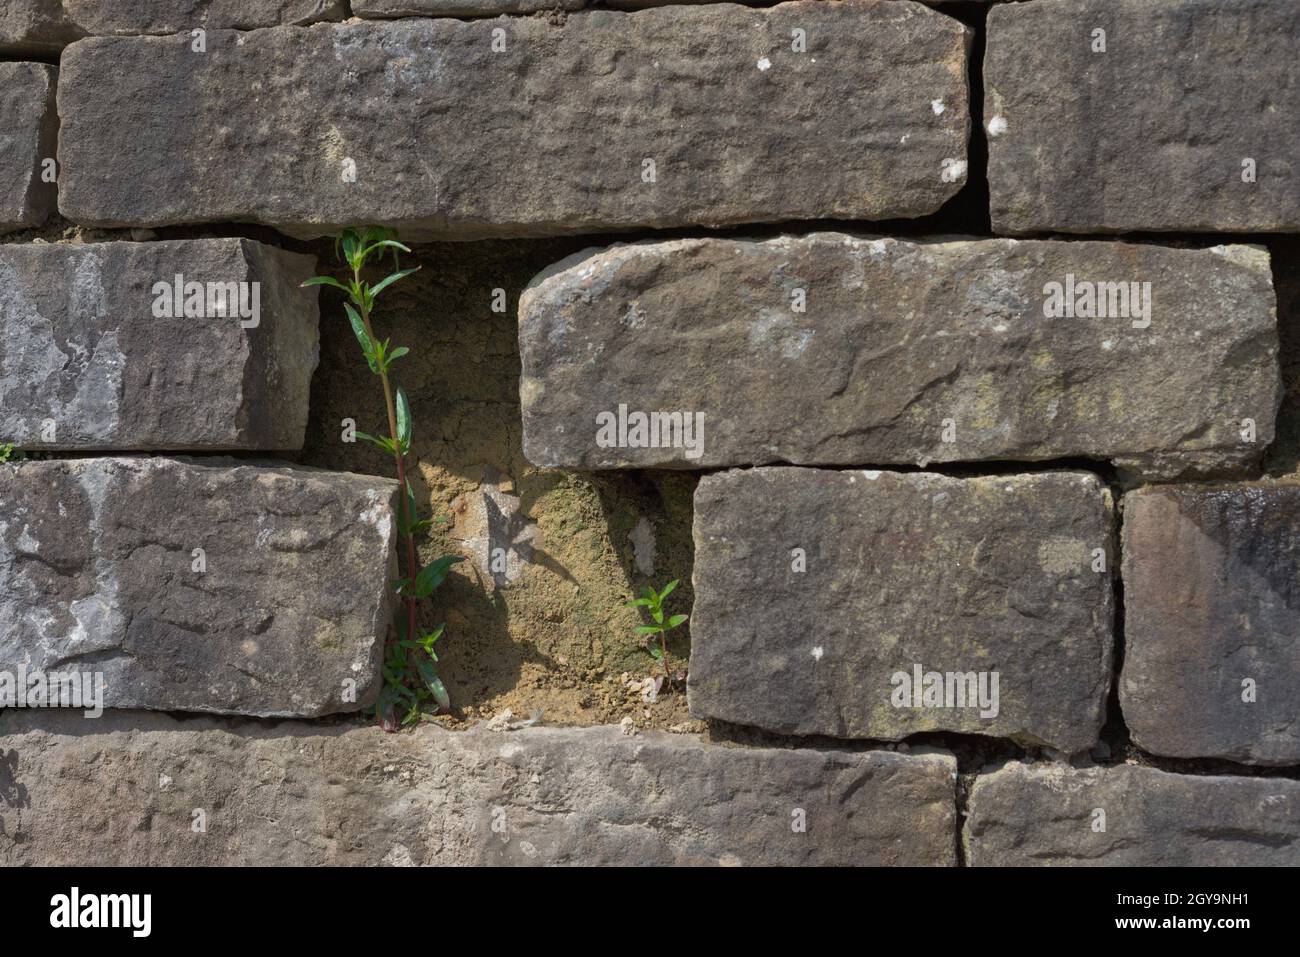 Un divario tra mattoni grigi grandi e chunky di questa parete permette appena abbastanza spazio per due piante verdi snella svilupparsi. Scena illuminata dal sole. Foto Stock